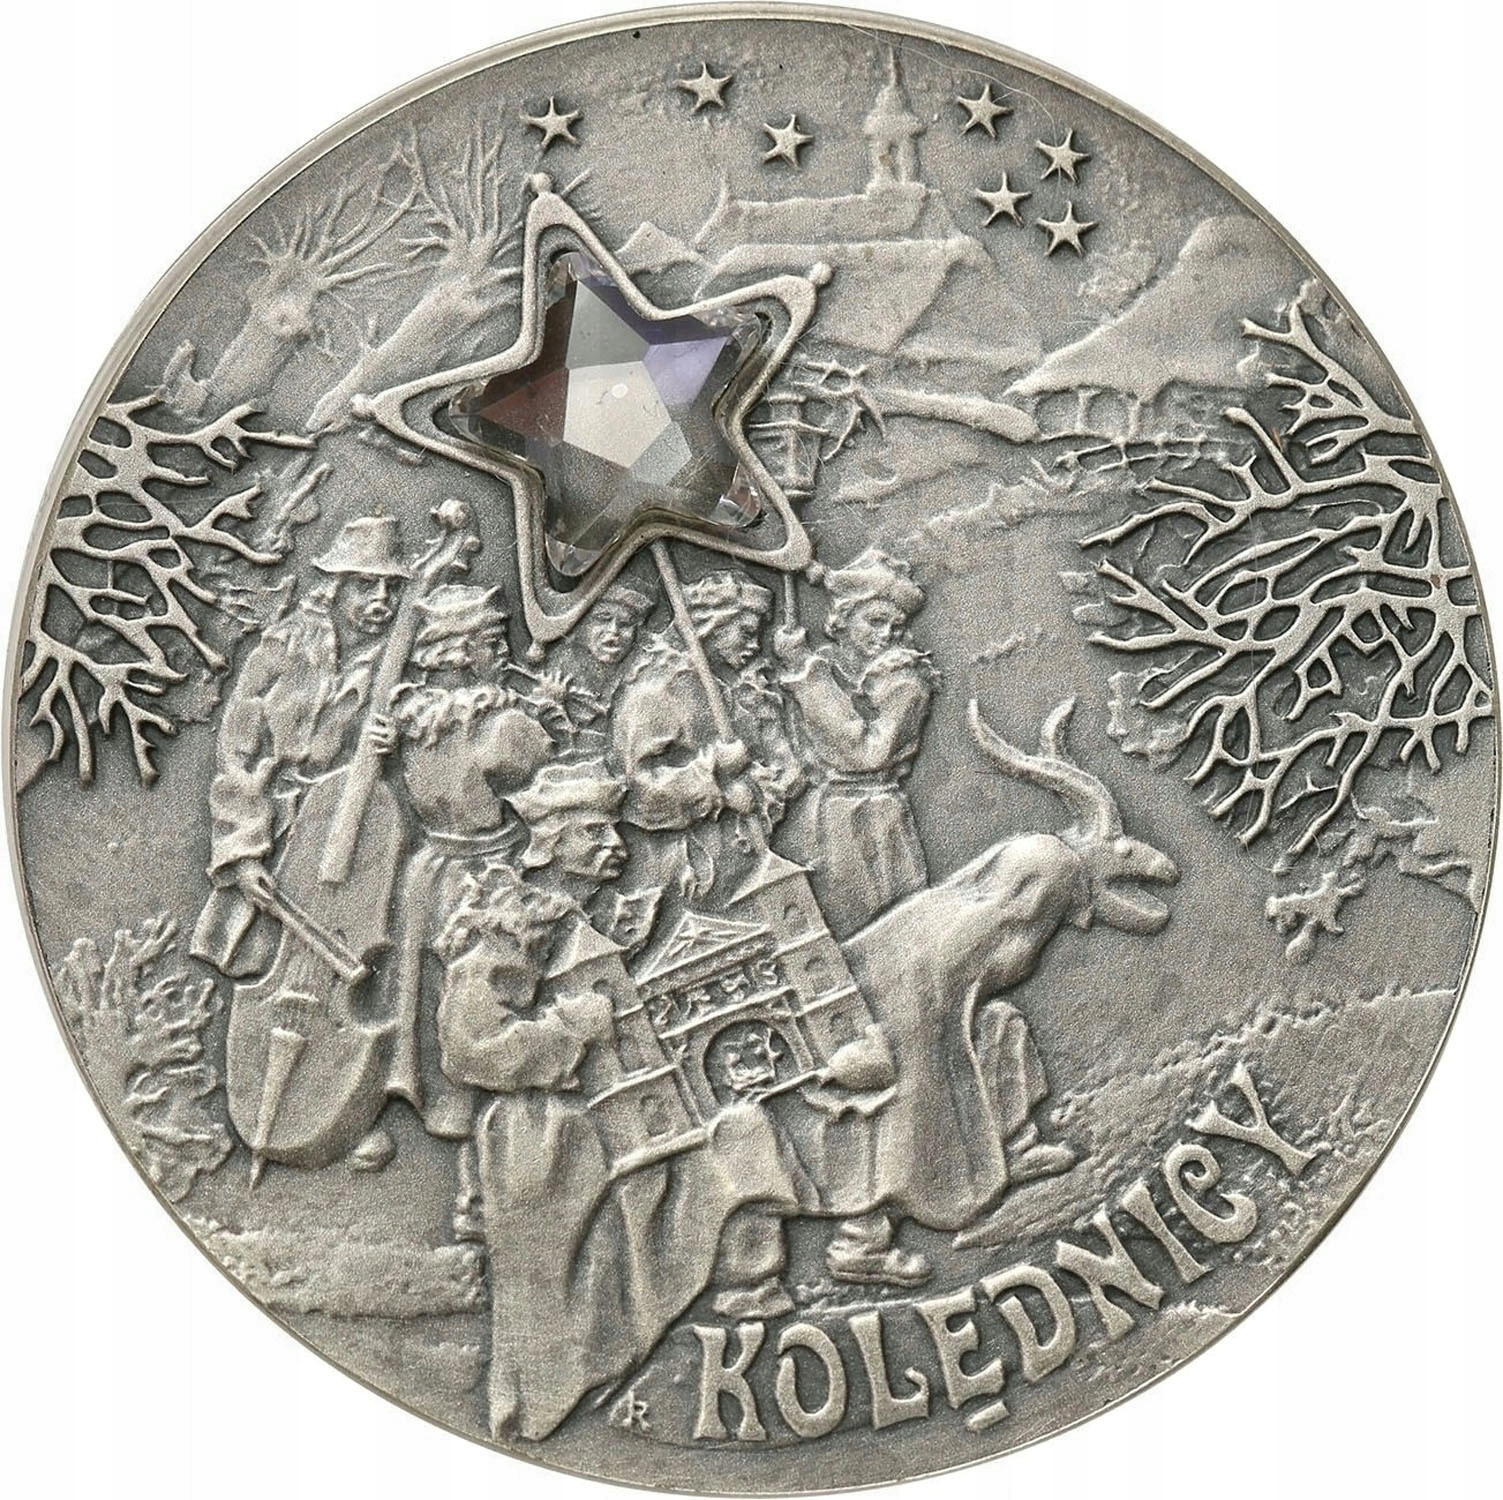 III RP. 20 złotych 2001 Kolędnicy – SREBRO